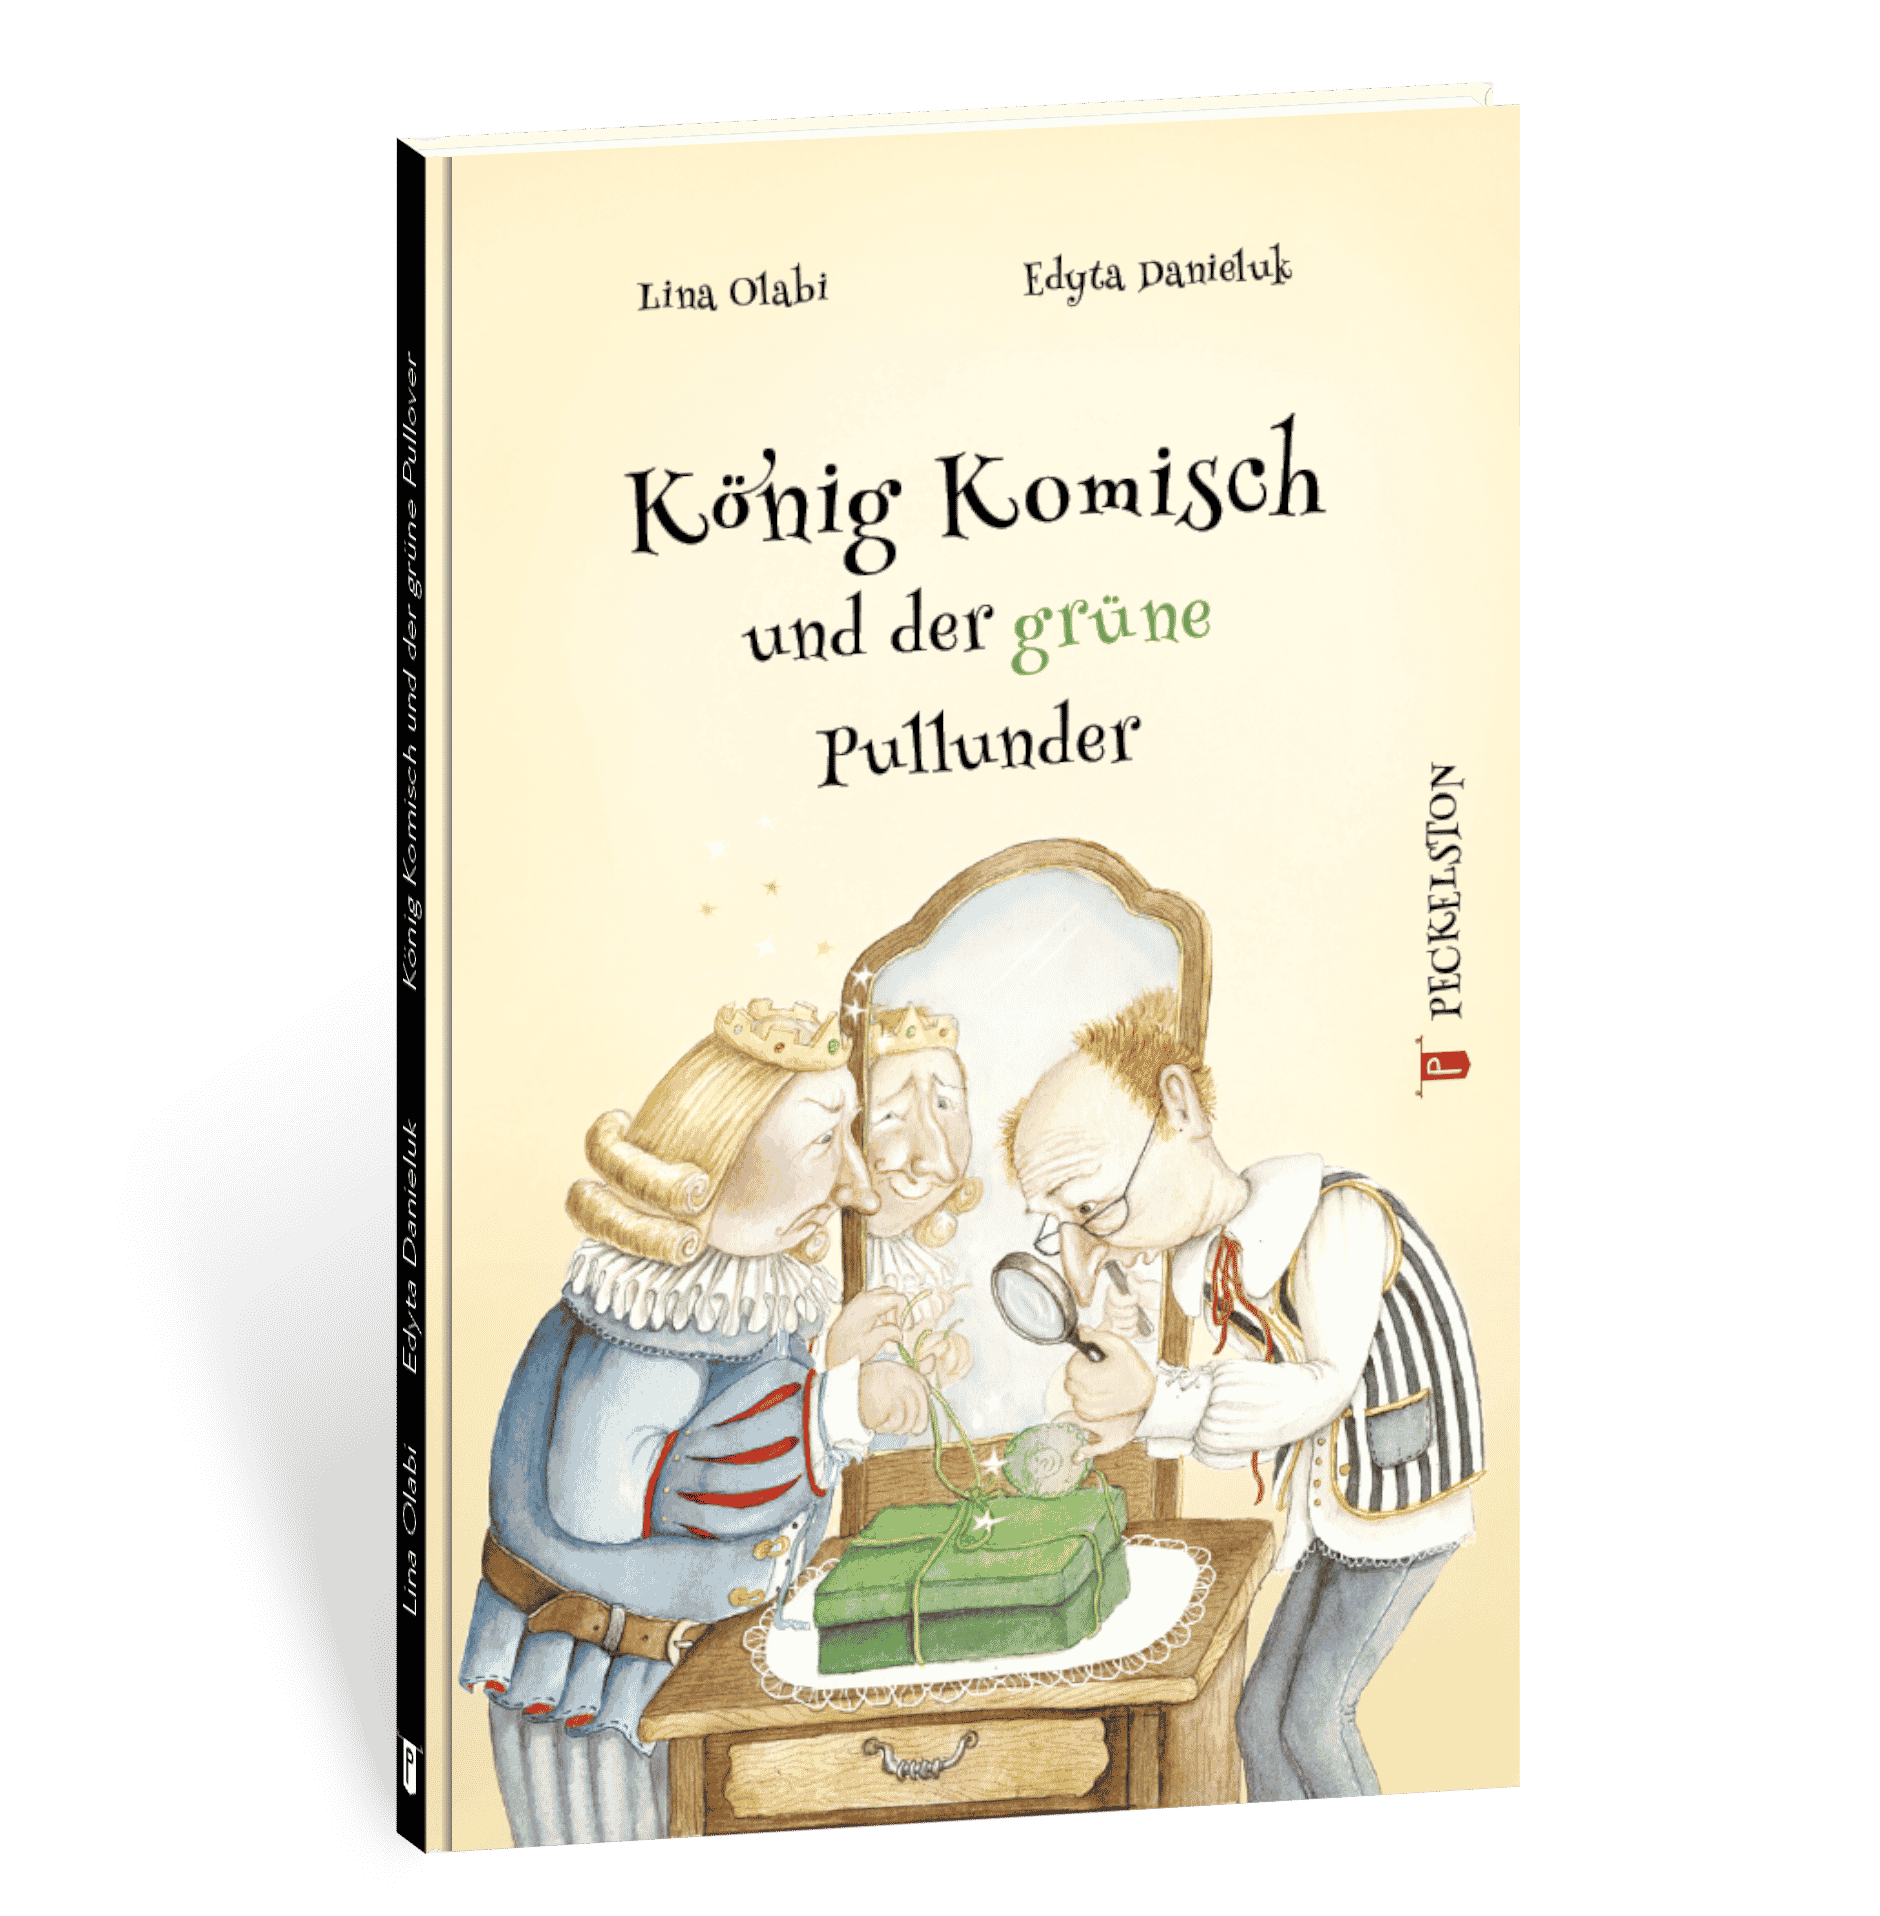 peckelston kinderbuchverlag könig komisch und der grüne pullunder lina olabi edyta danieluk